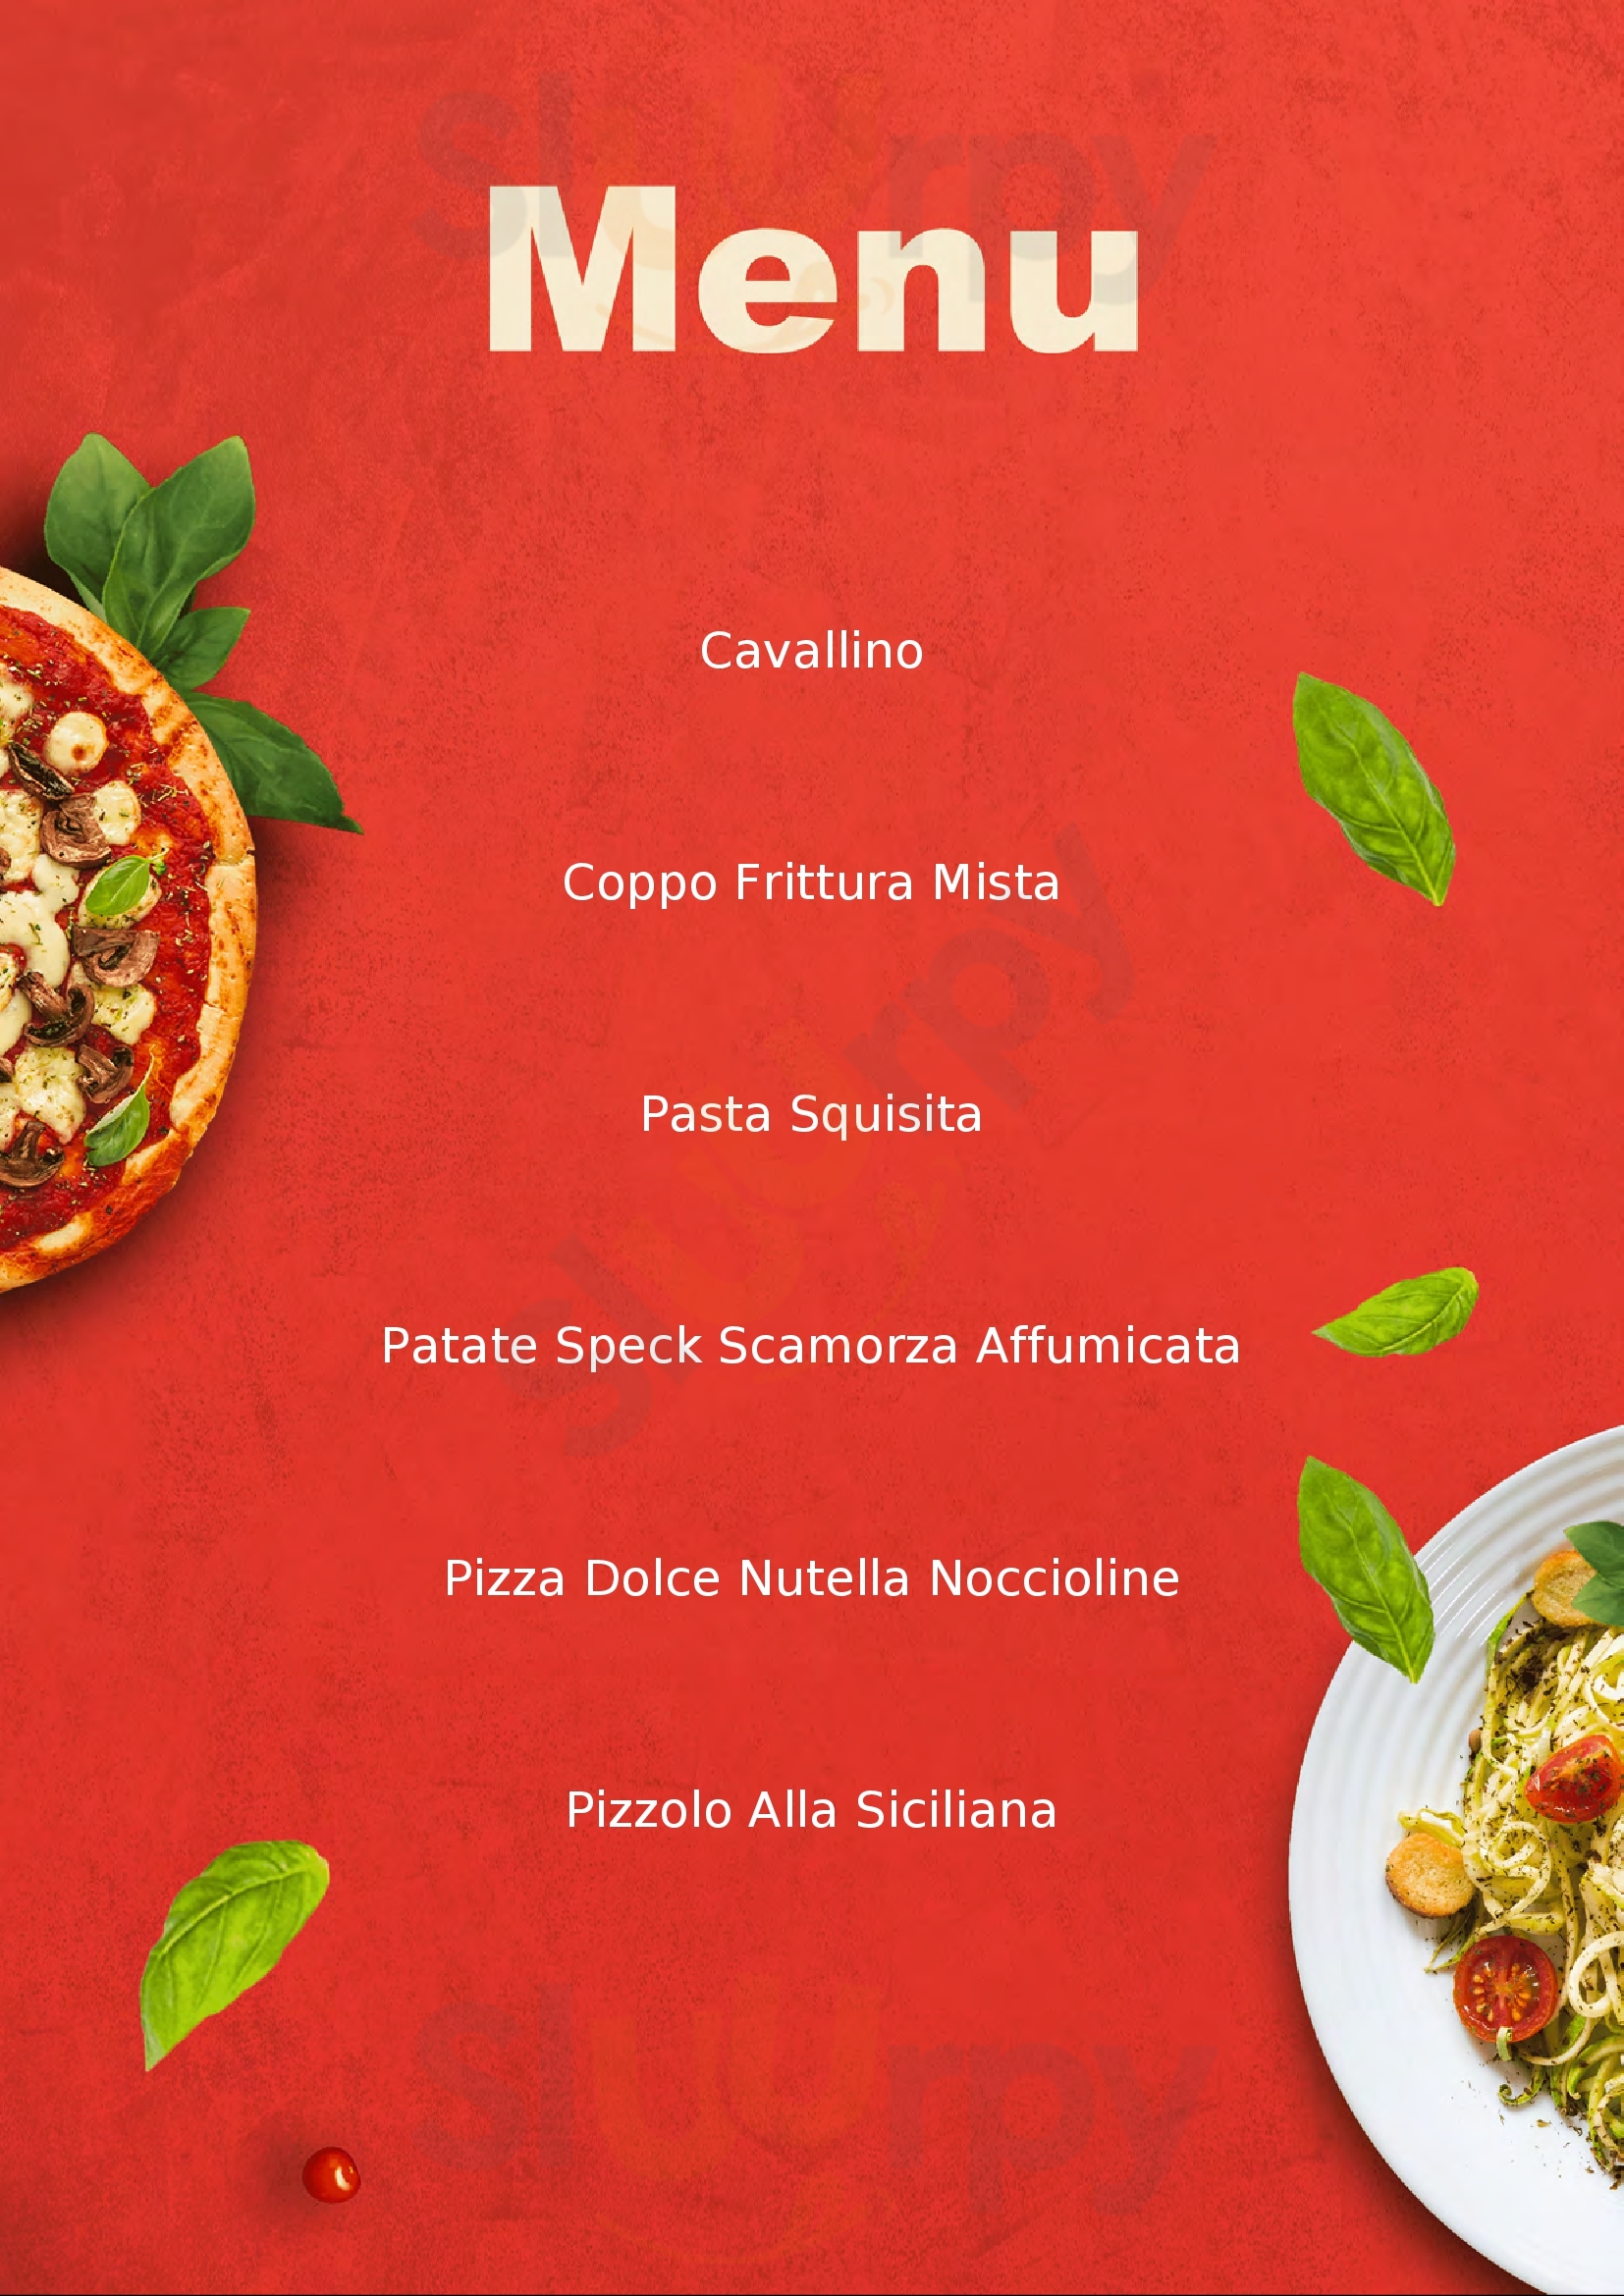 Il Garibaldino Pizzoleria-Pizzeria Modica menù 1 pagina